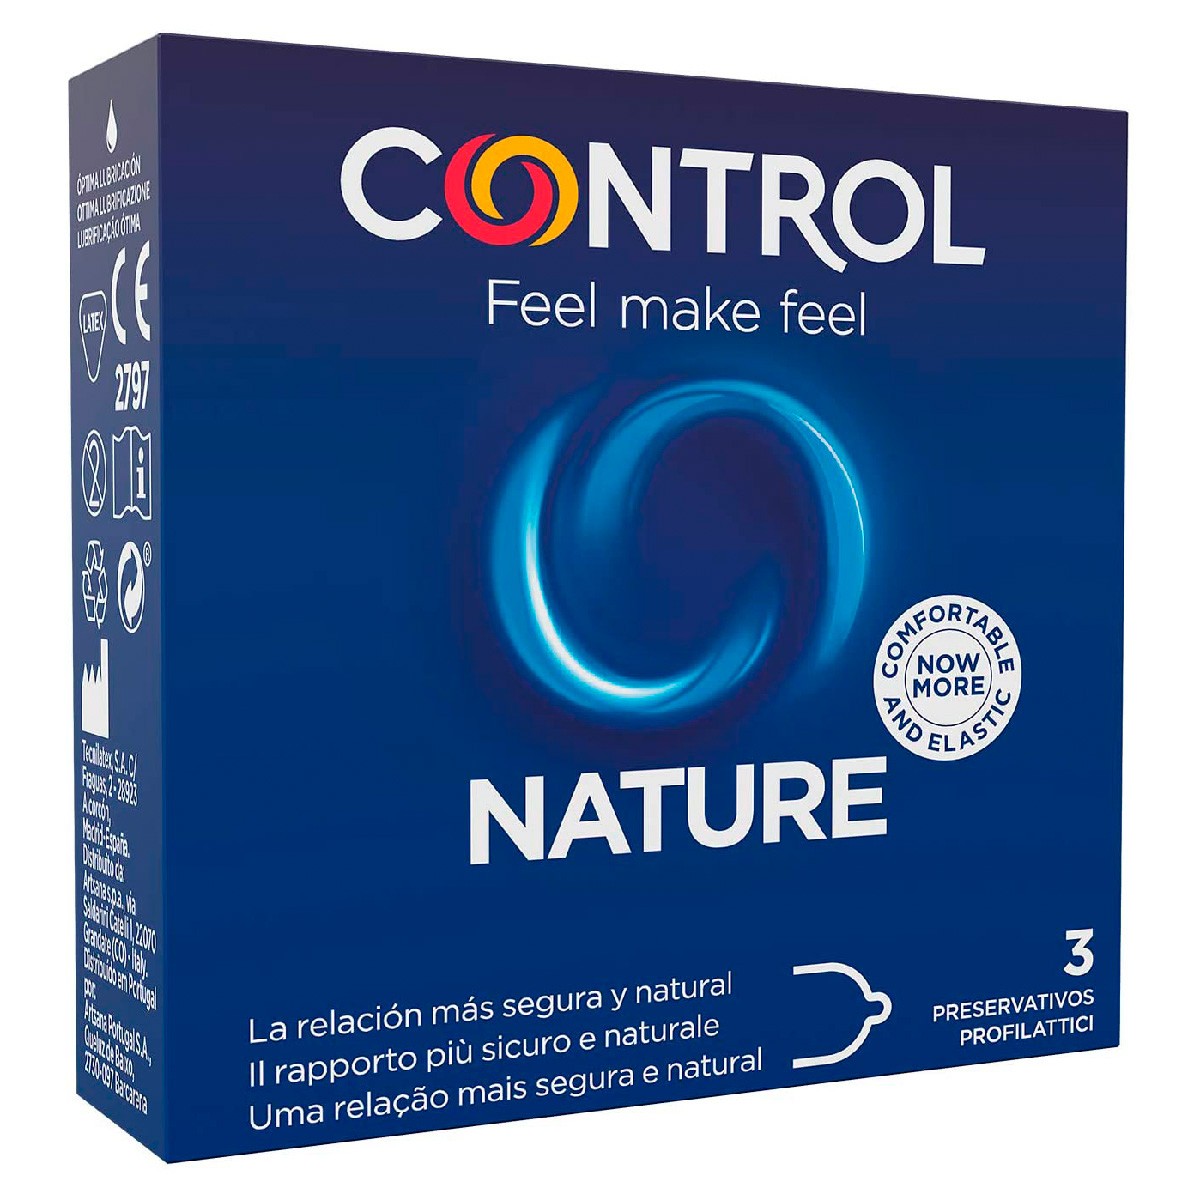 Contro preservativo adapta nature 3u